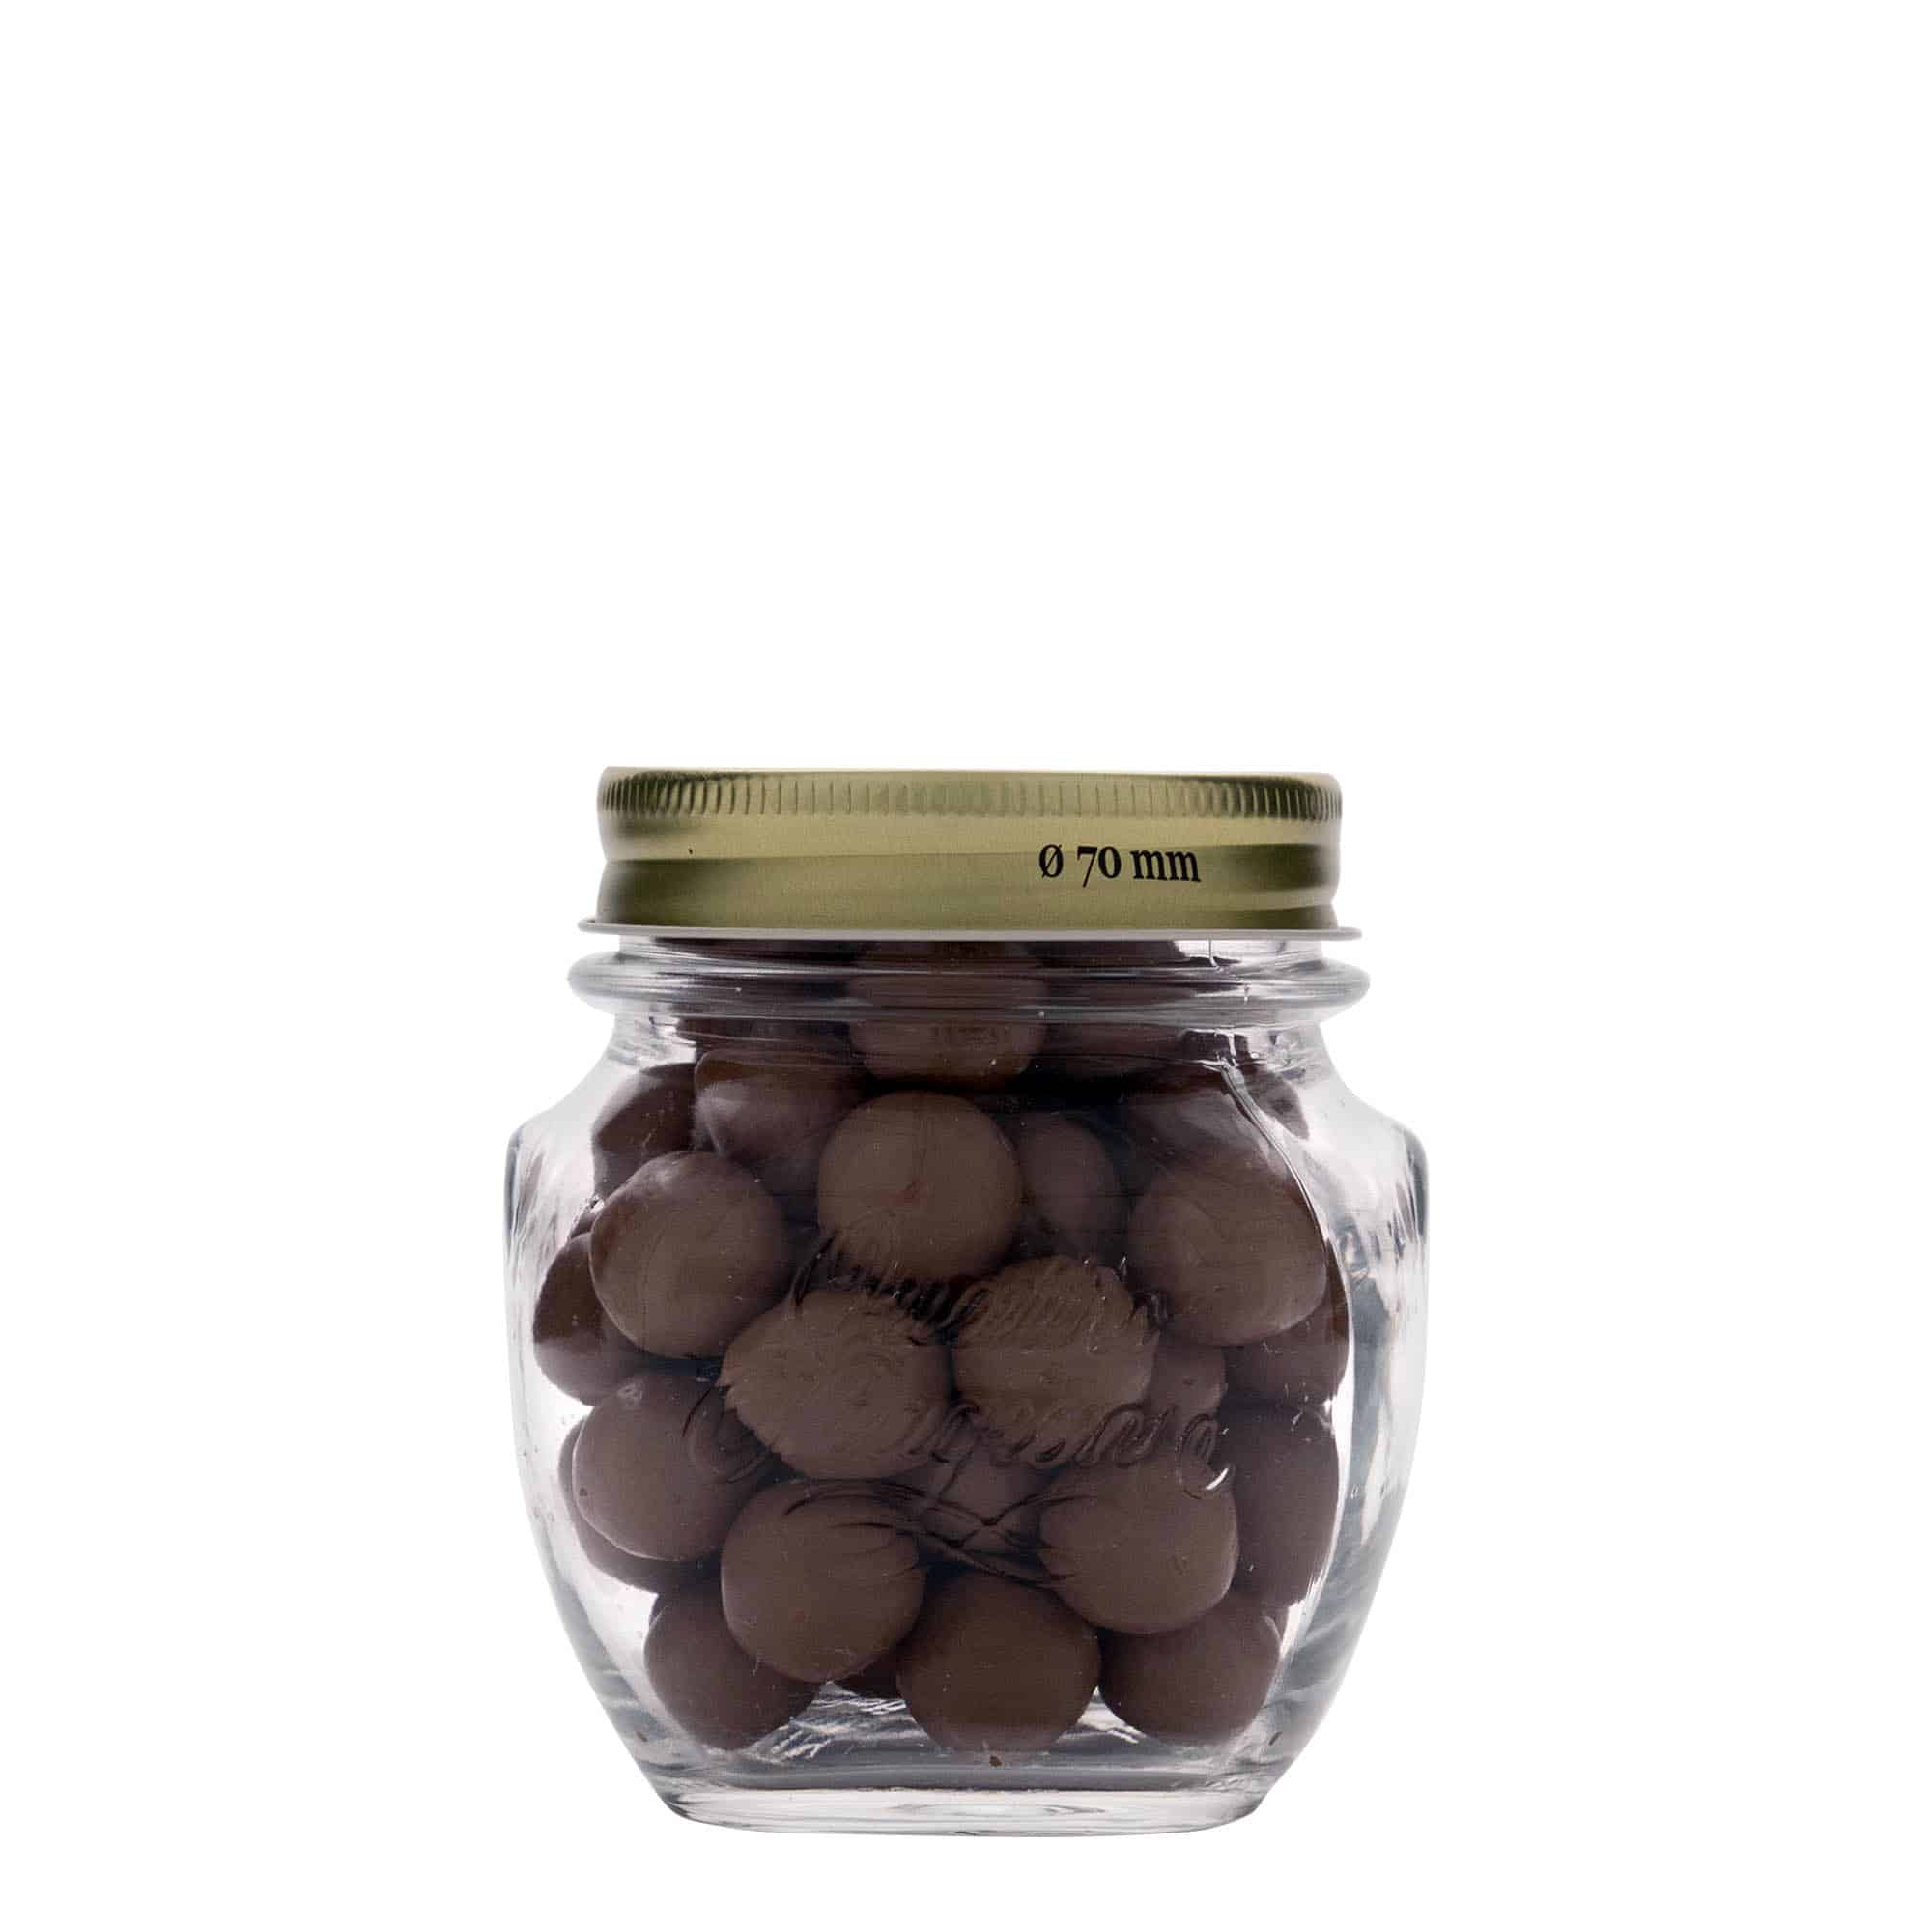 300 ml decorative jar 'Quattro Stagioni', closure: screw cap